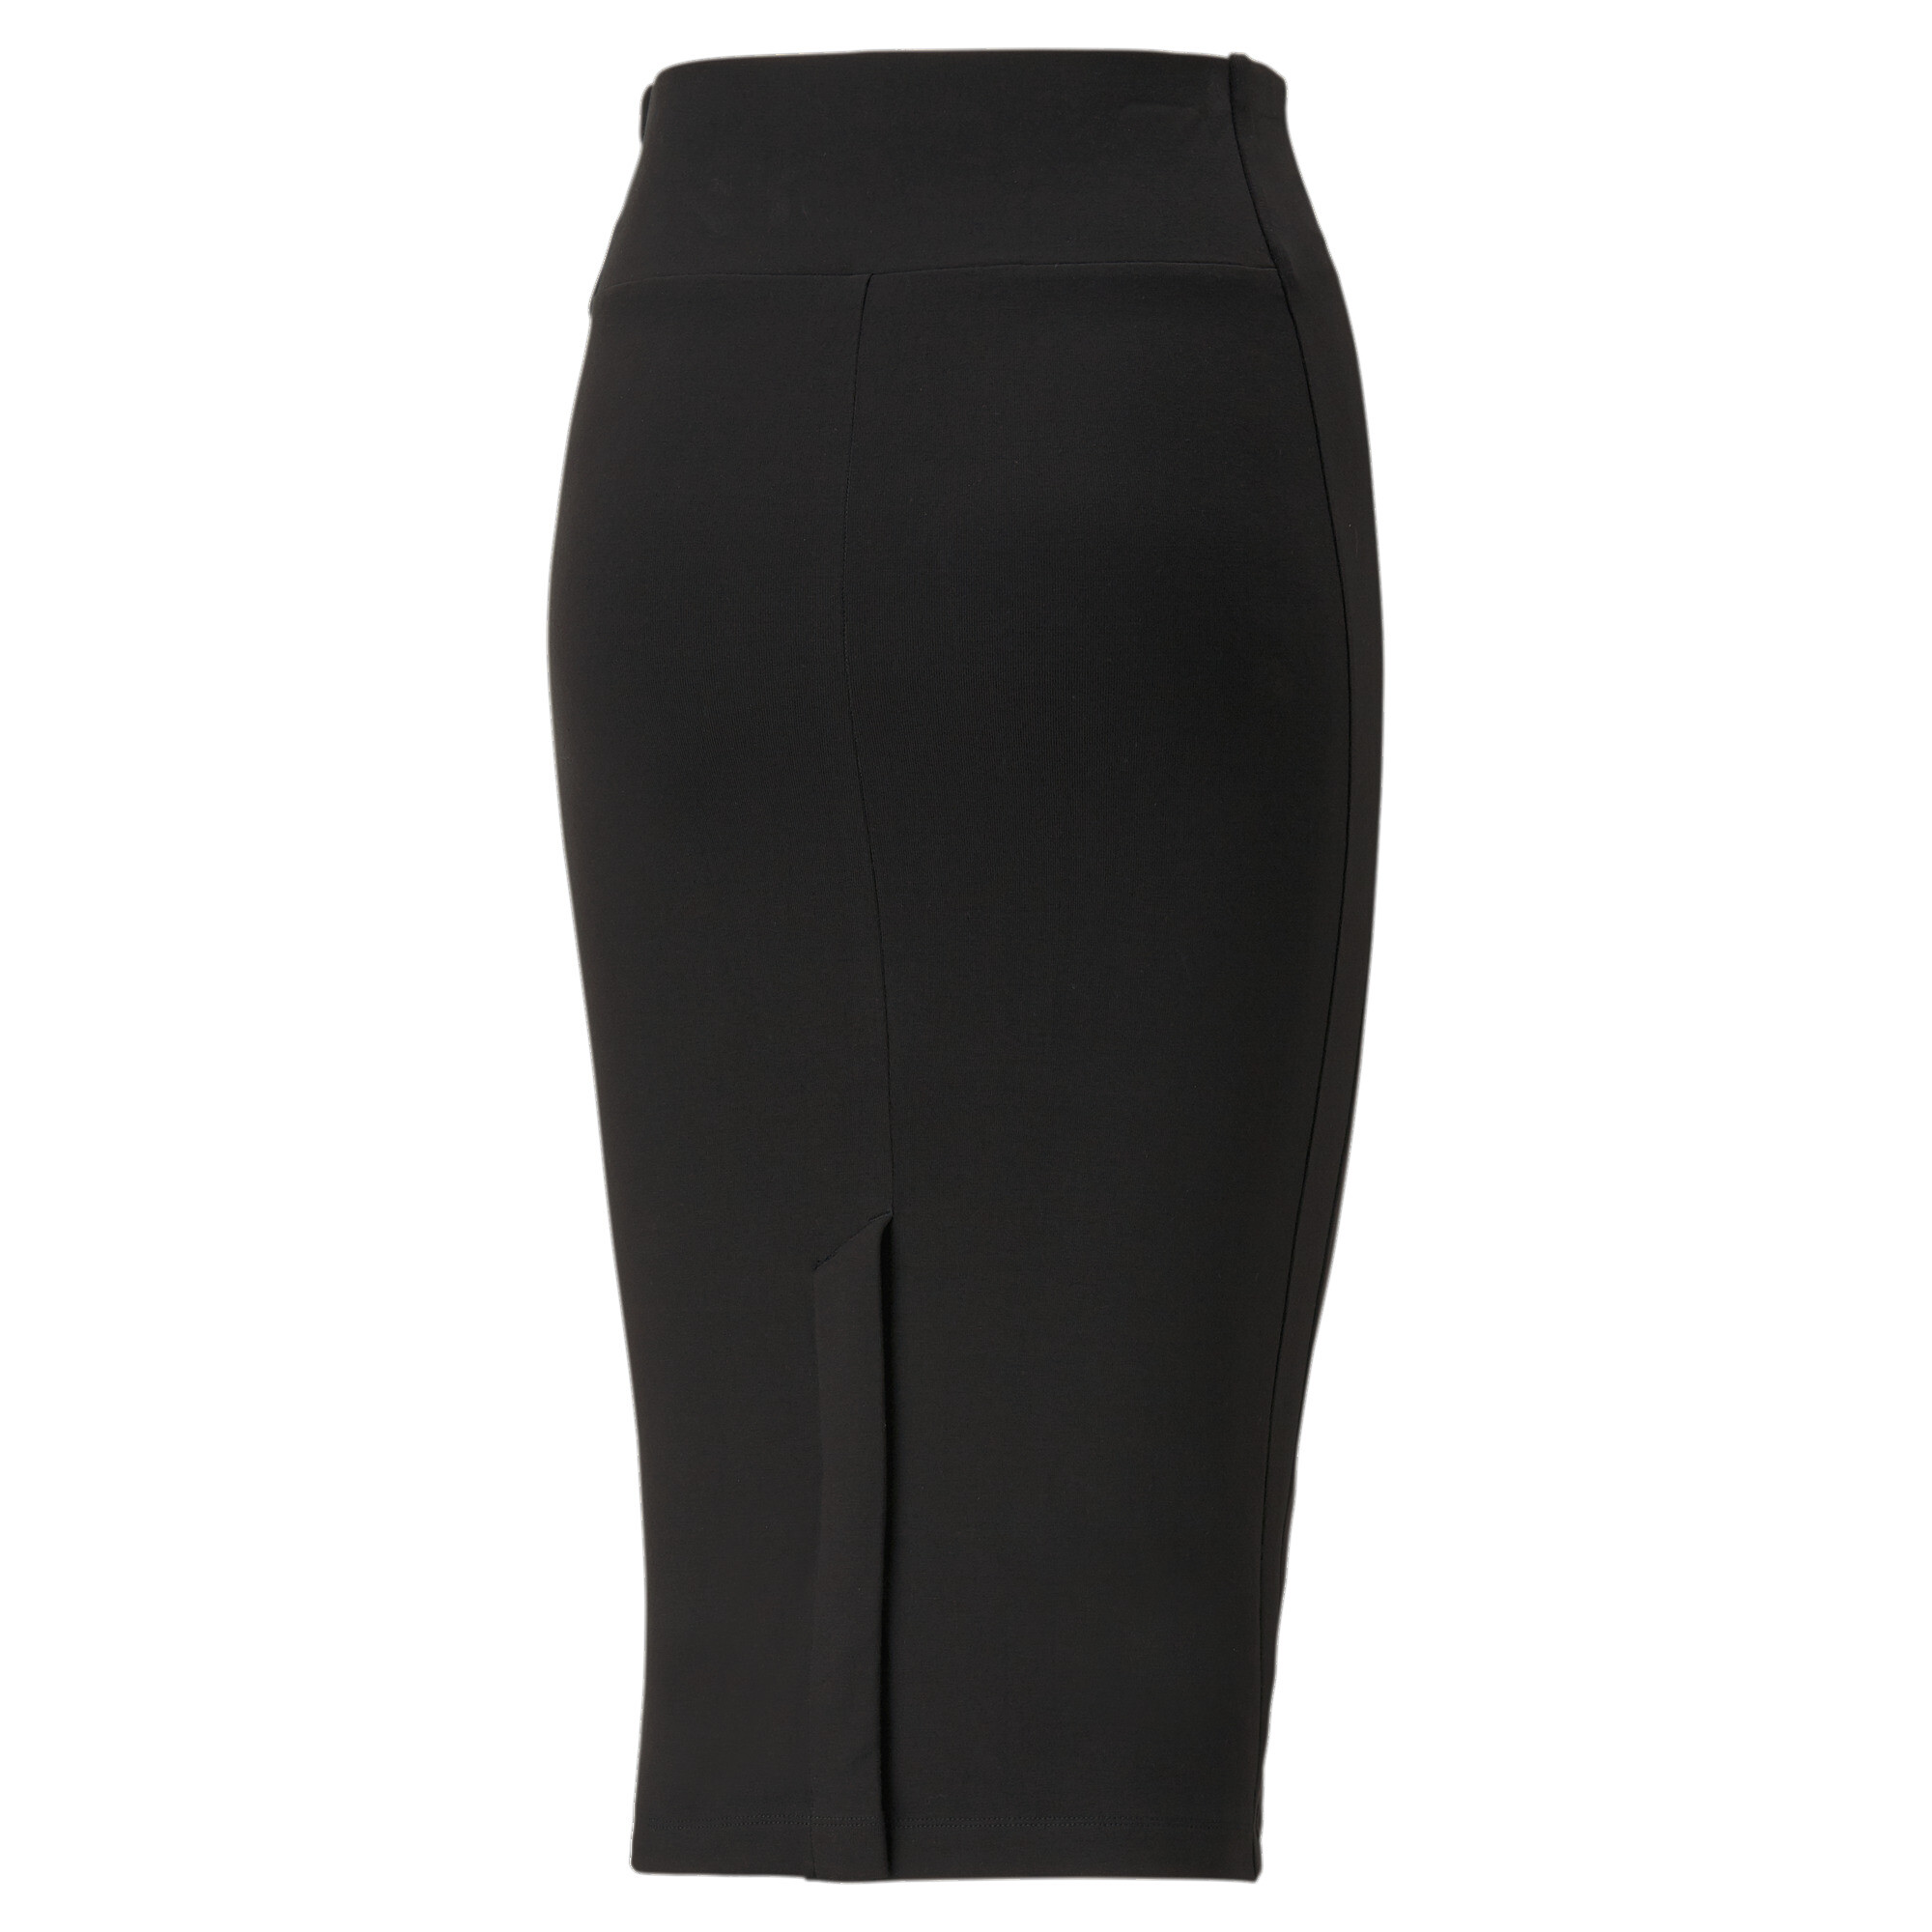 Women's PUMA T7 Long Skirt Women In Black, Size XL